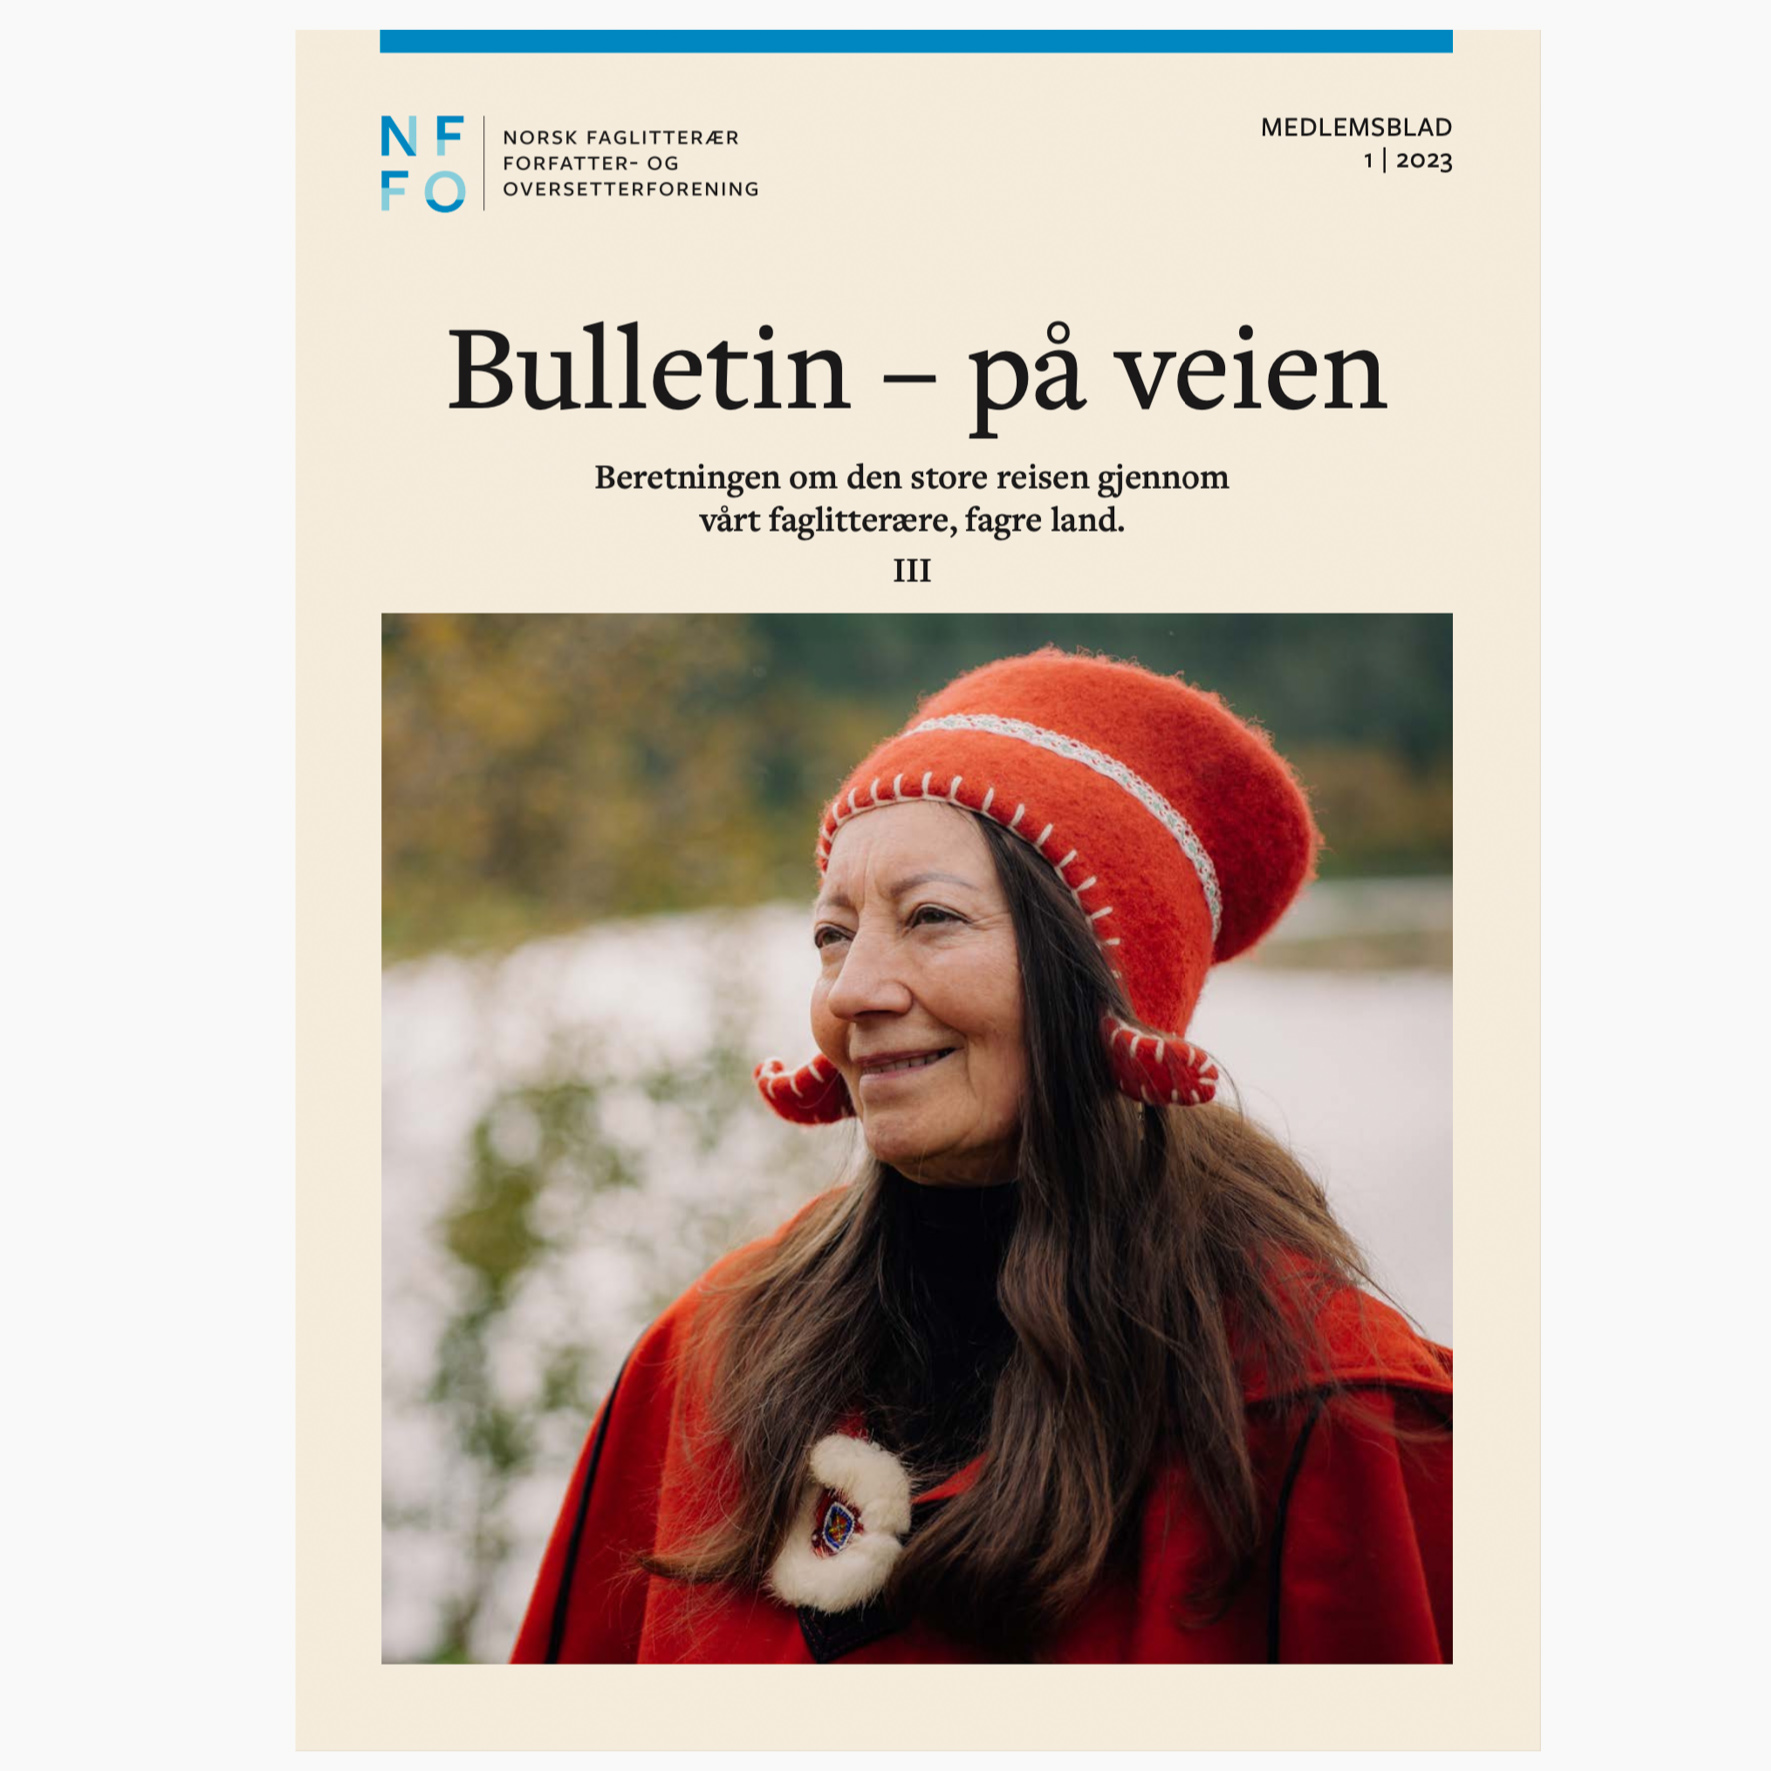 Writers in Finnmark for NFFO